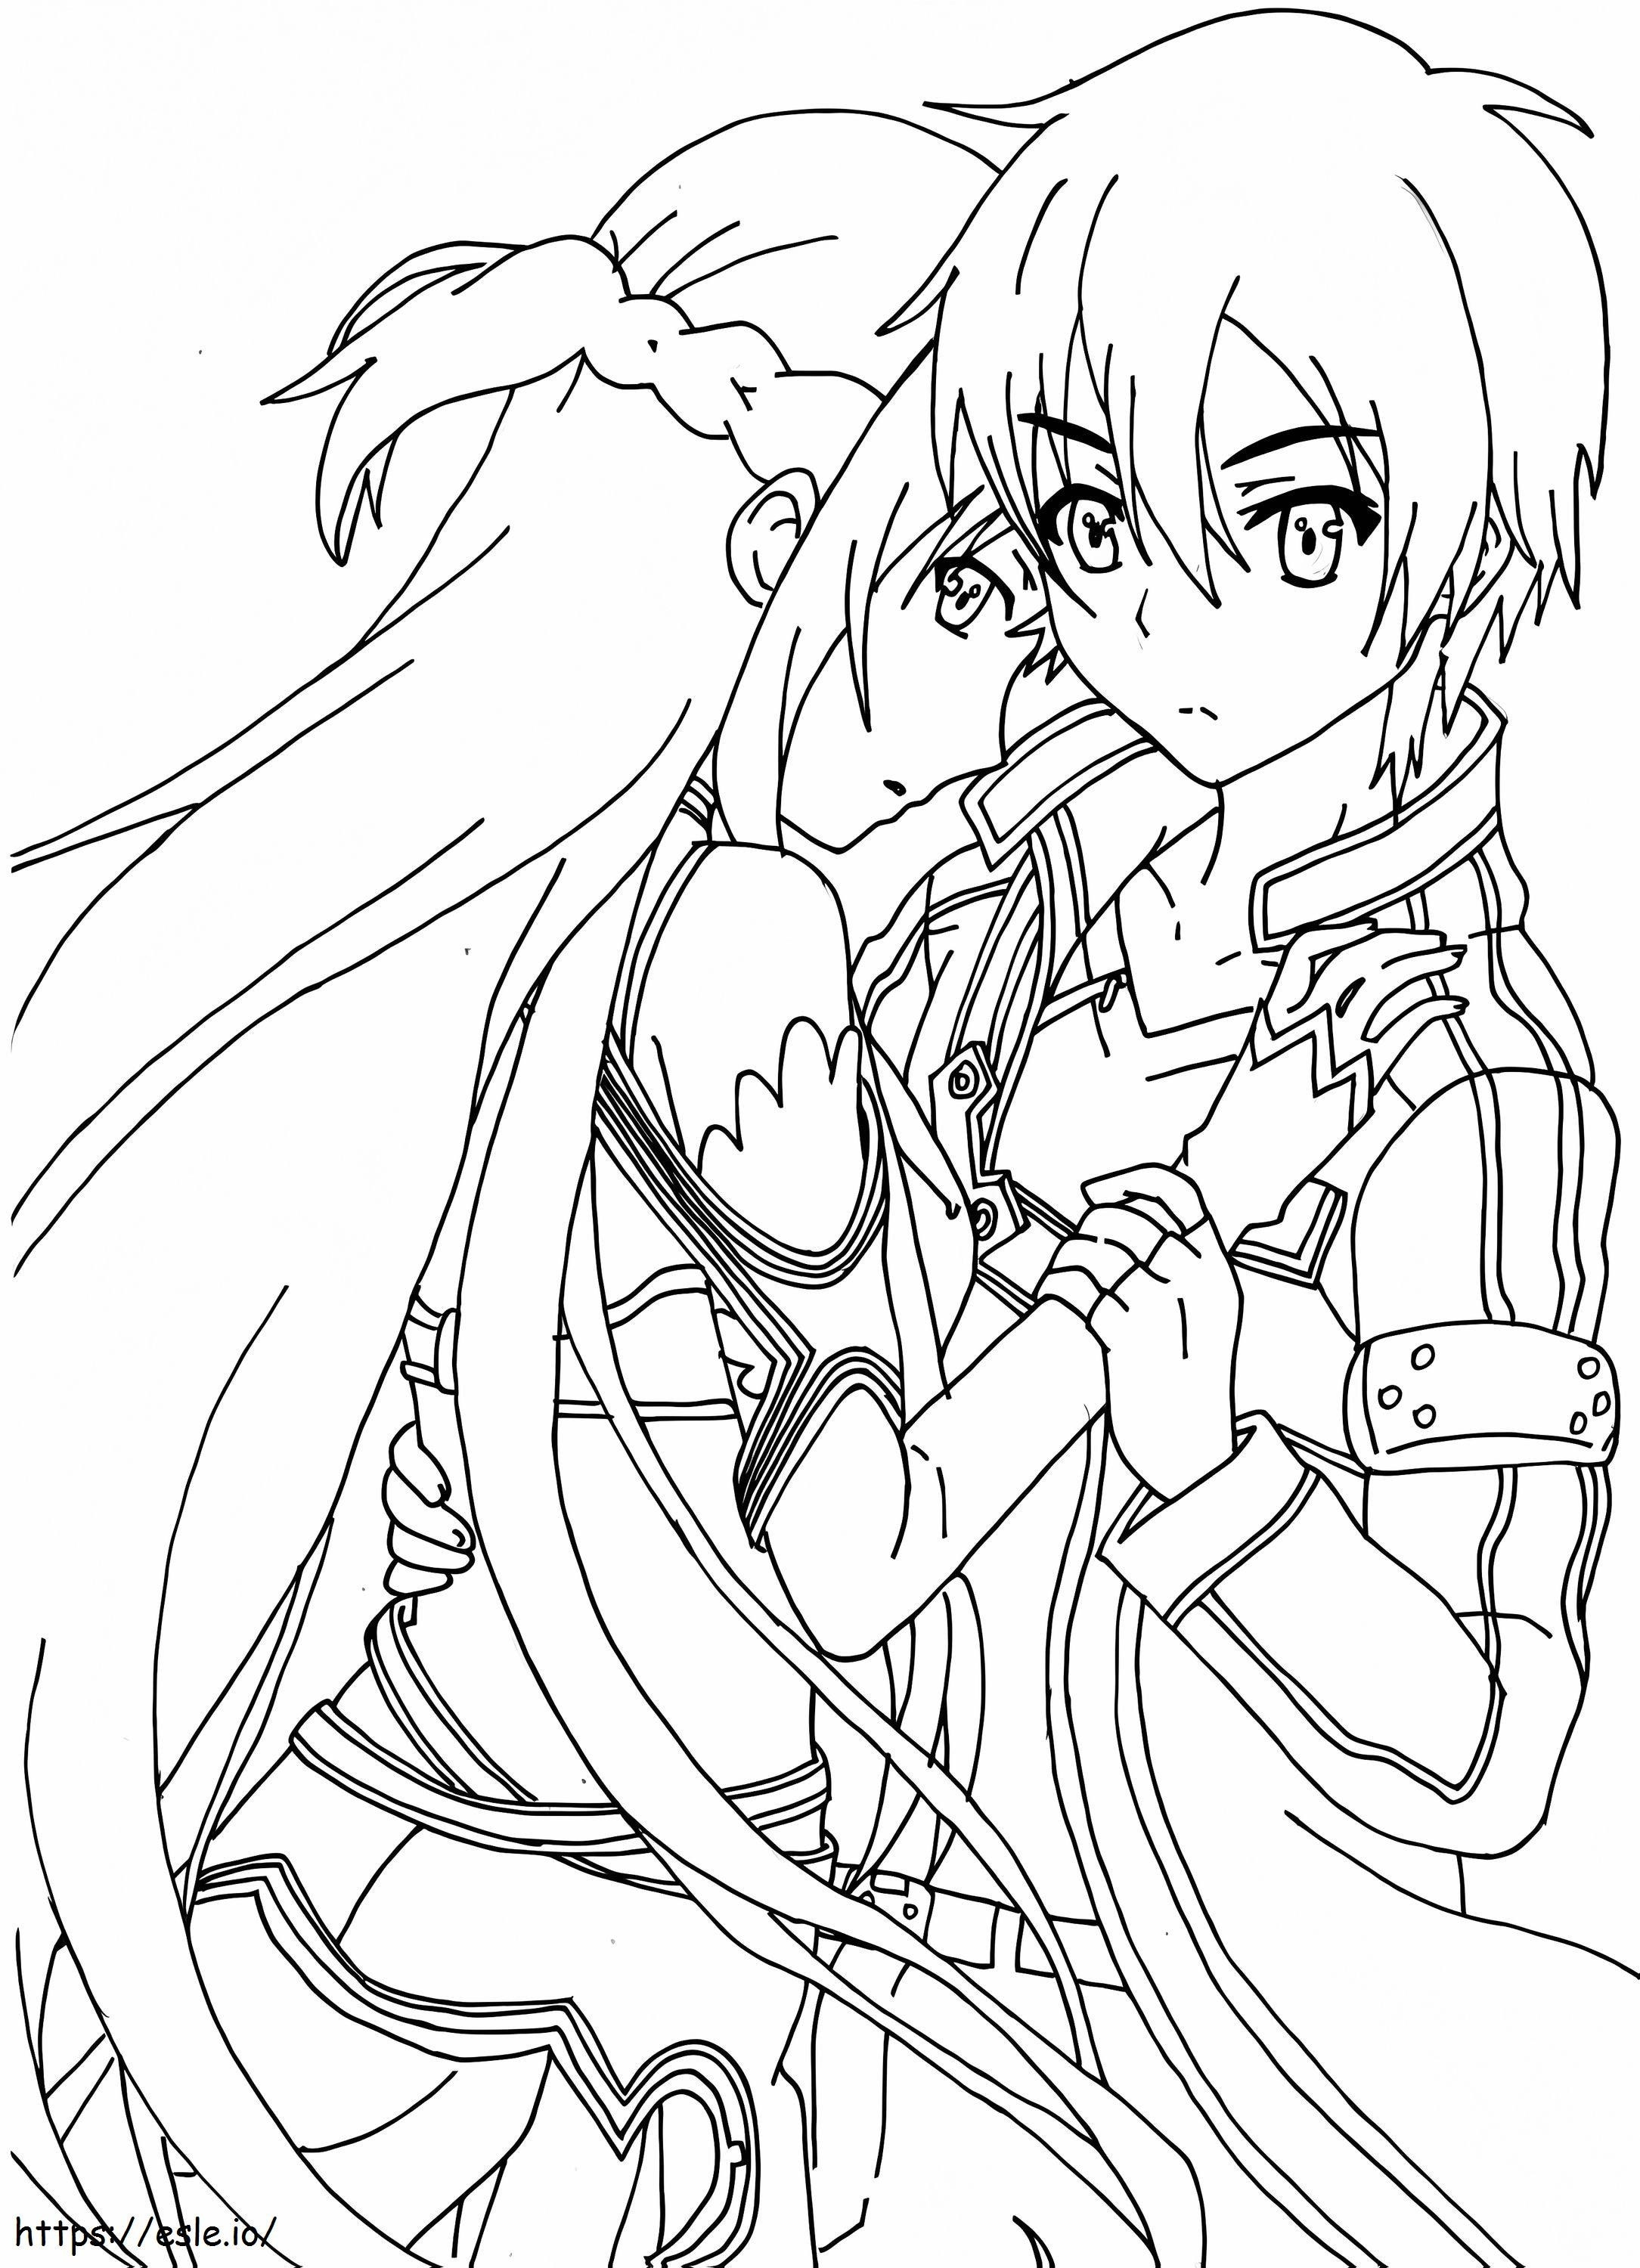 Iubesc Kirito și Asuna de colorat